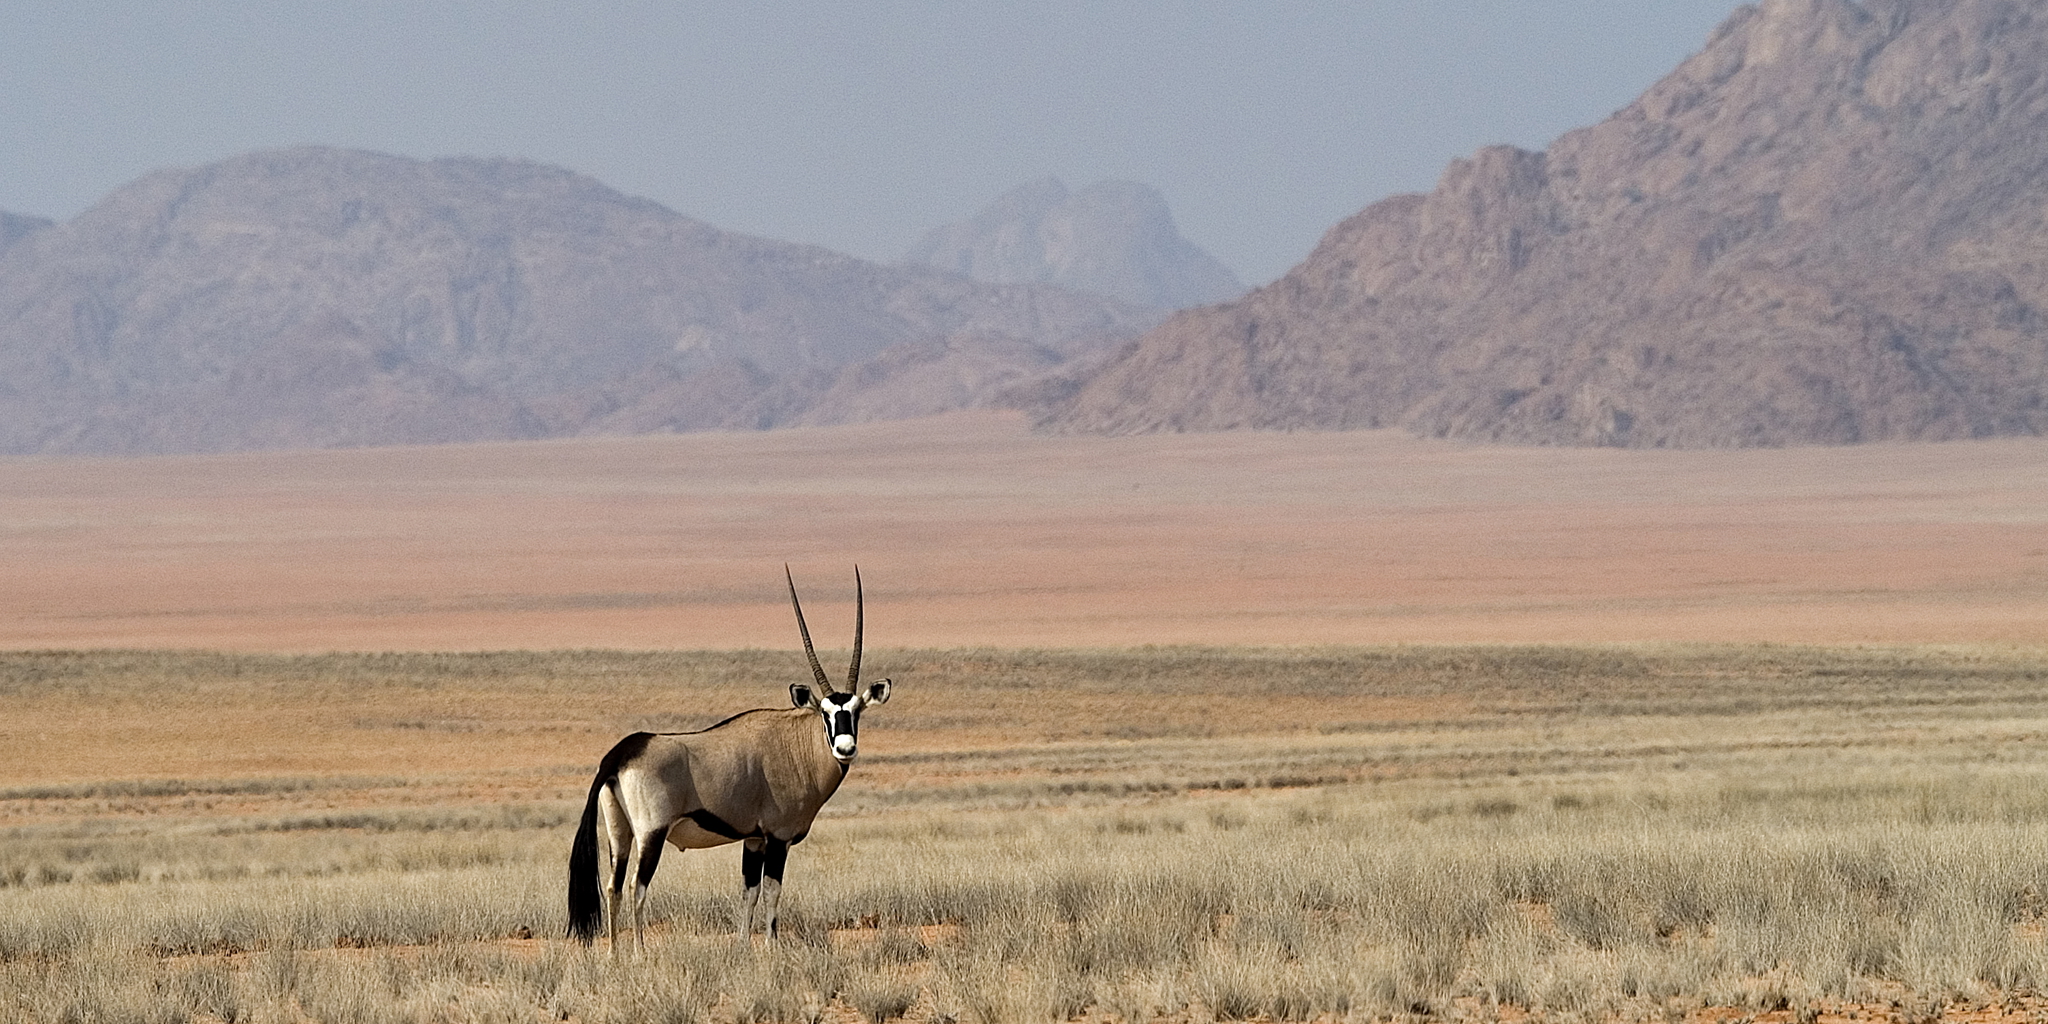 antelope in kunene river, namibia safari vacations